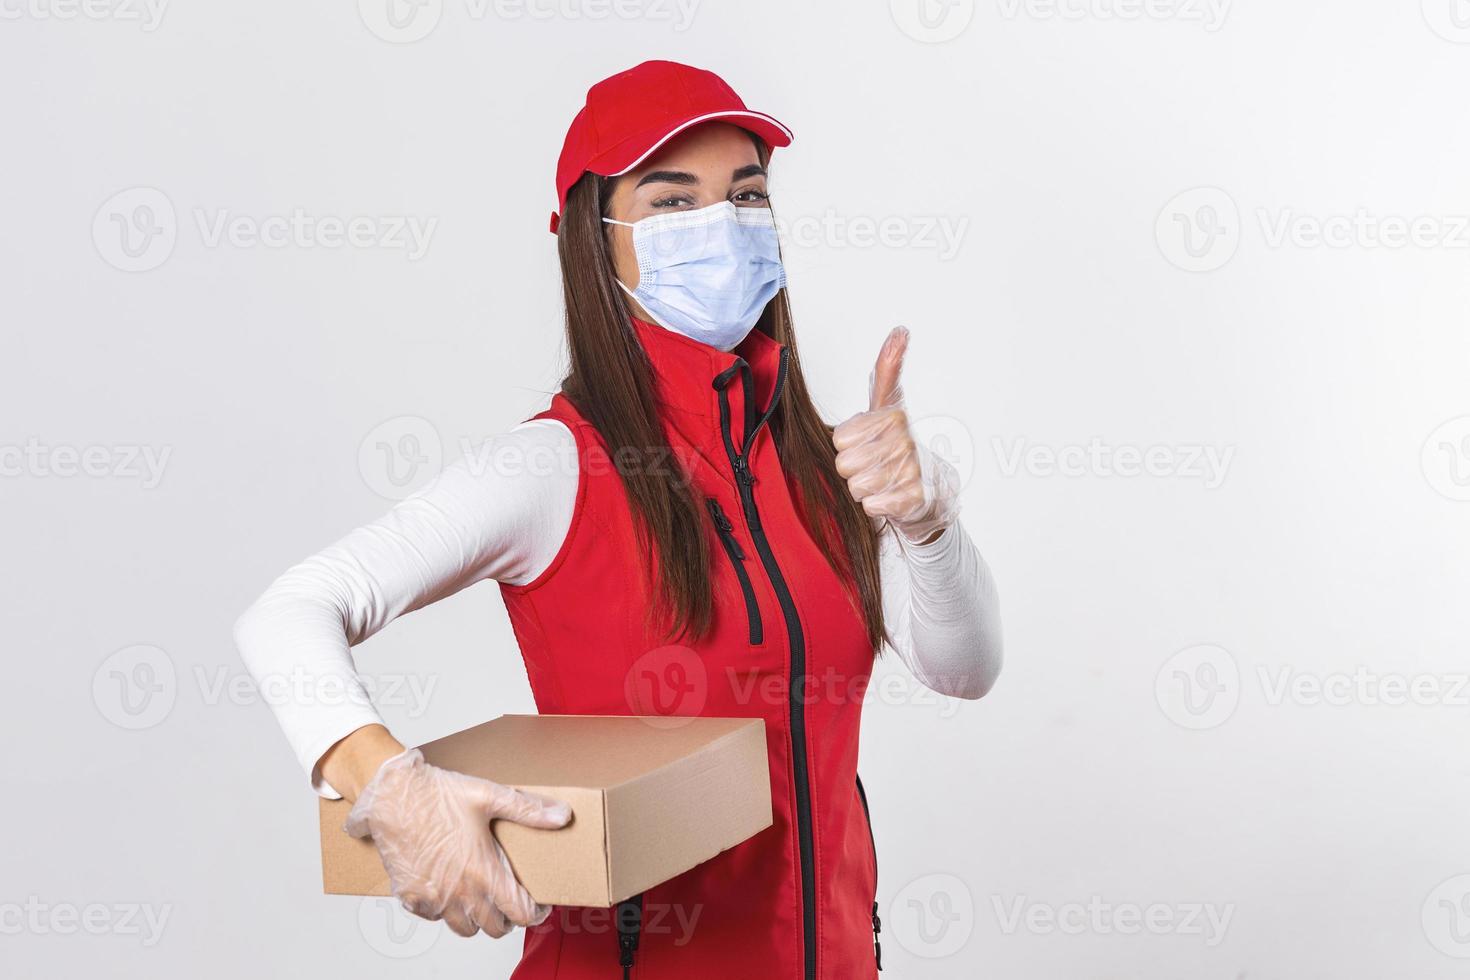 femme de livraison employée en casquette rouge t-shirt blanc uniforme masque facial gants tenir boîte en carton montrant les pouces vers le haut isolé sur fond blanc. quarantaine pandémique coronavirus virus 2019-ncov concept photo